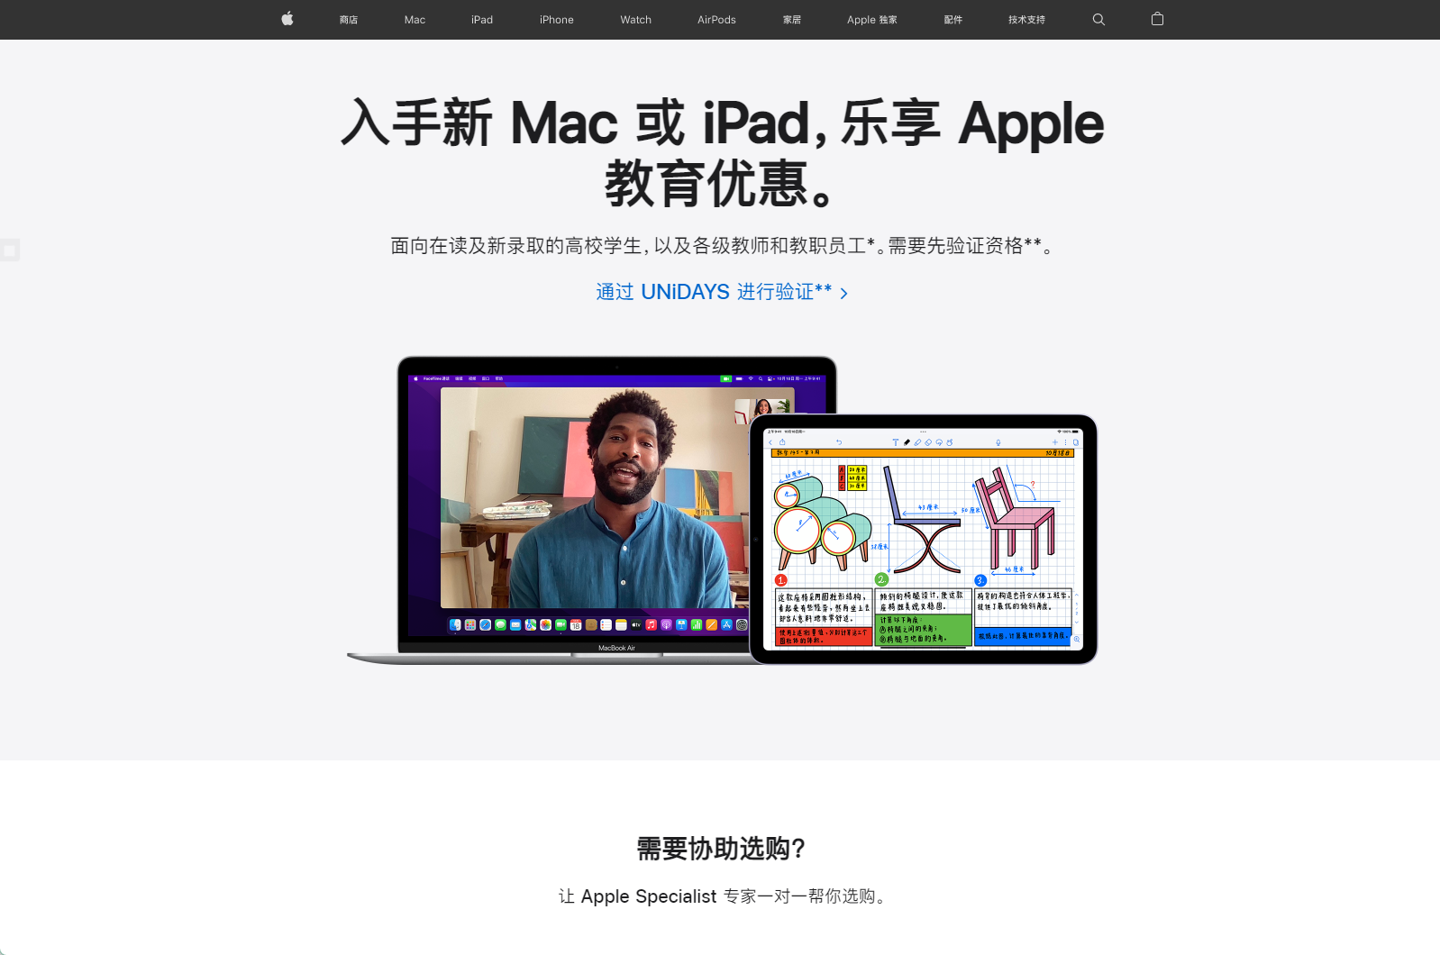 消息称苹果开学 / 返校季活动将于 7 月 14 日在中国开启，最后一年送耳机